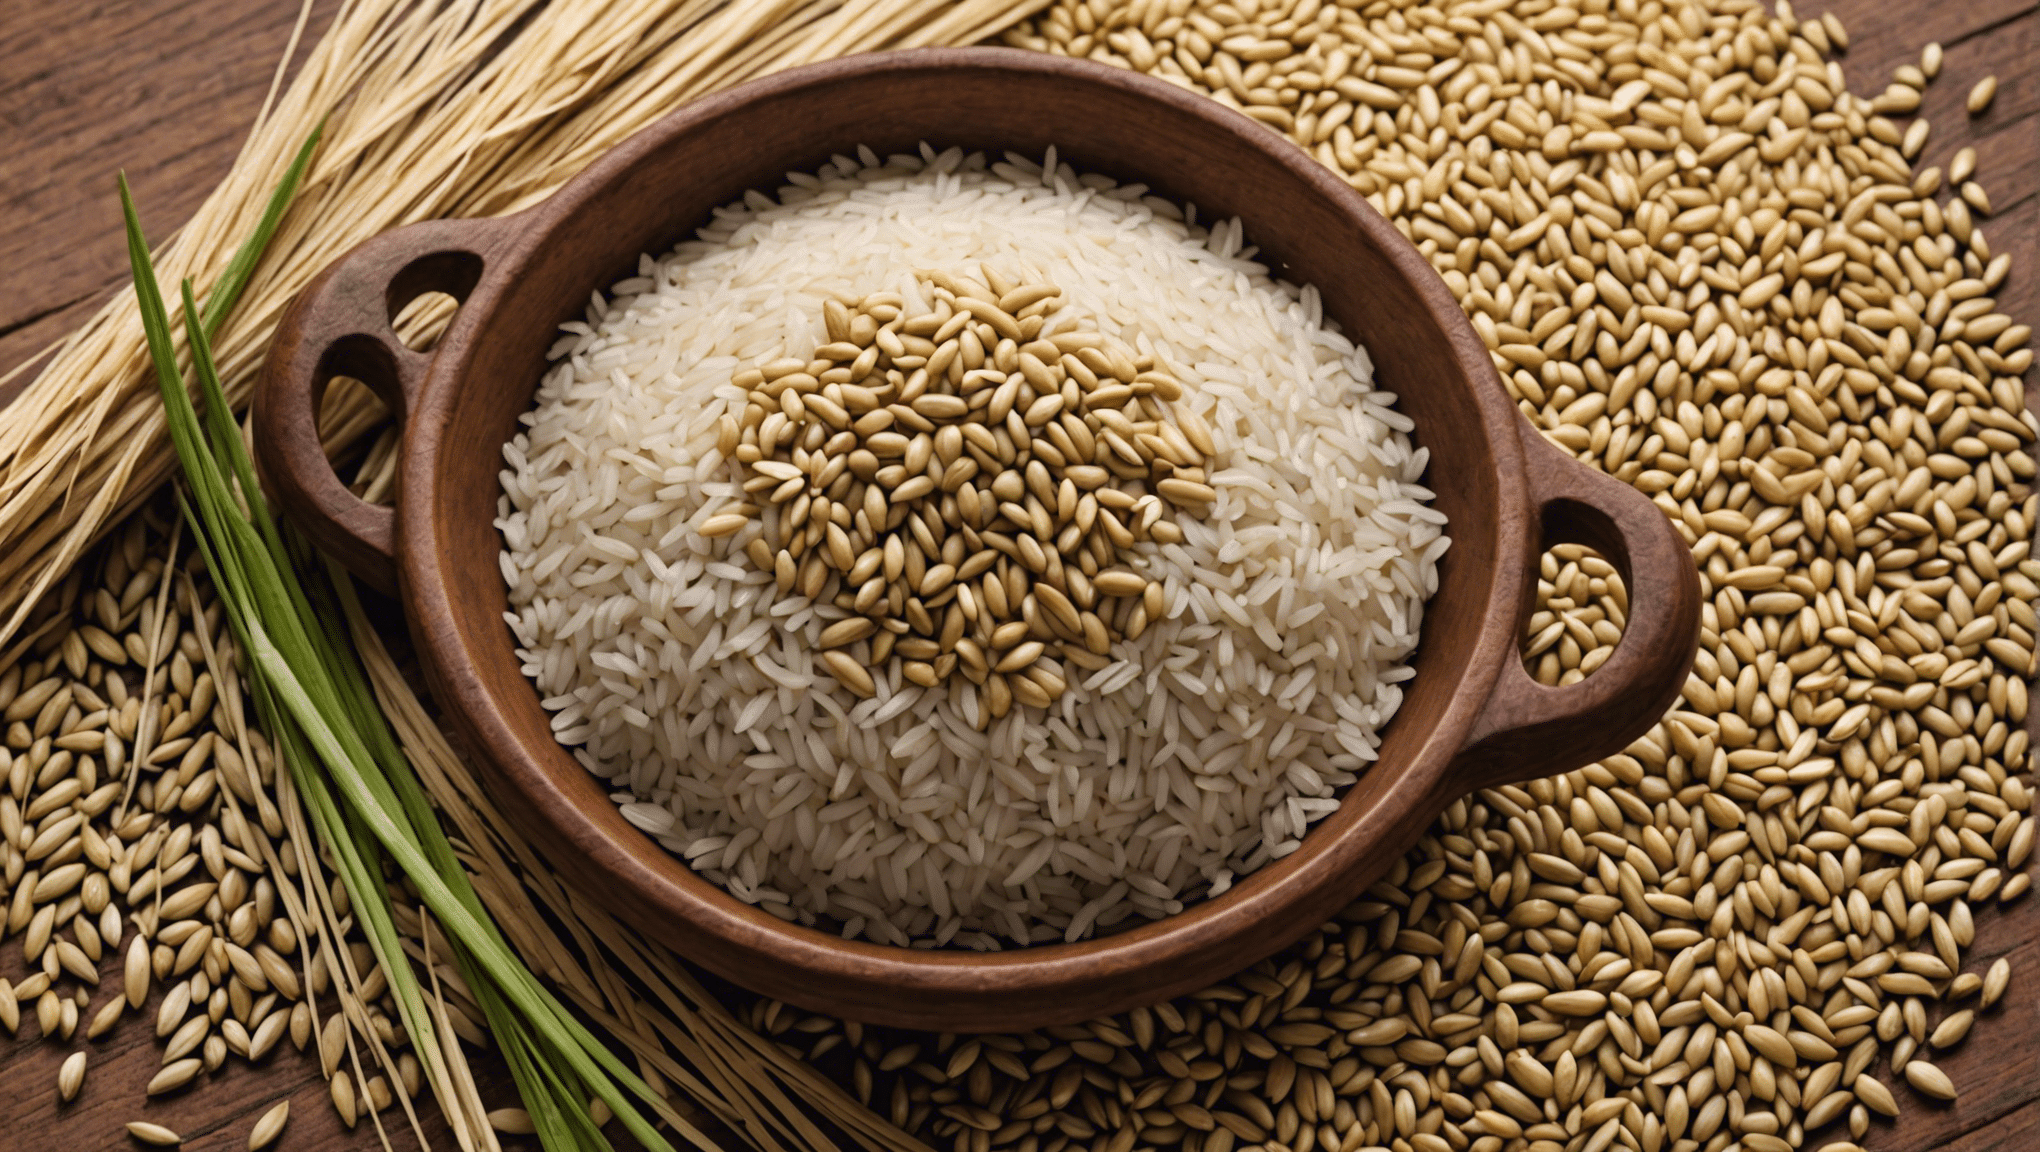 Chironji Seed Rice